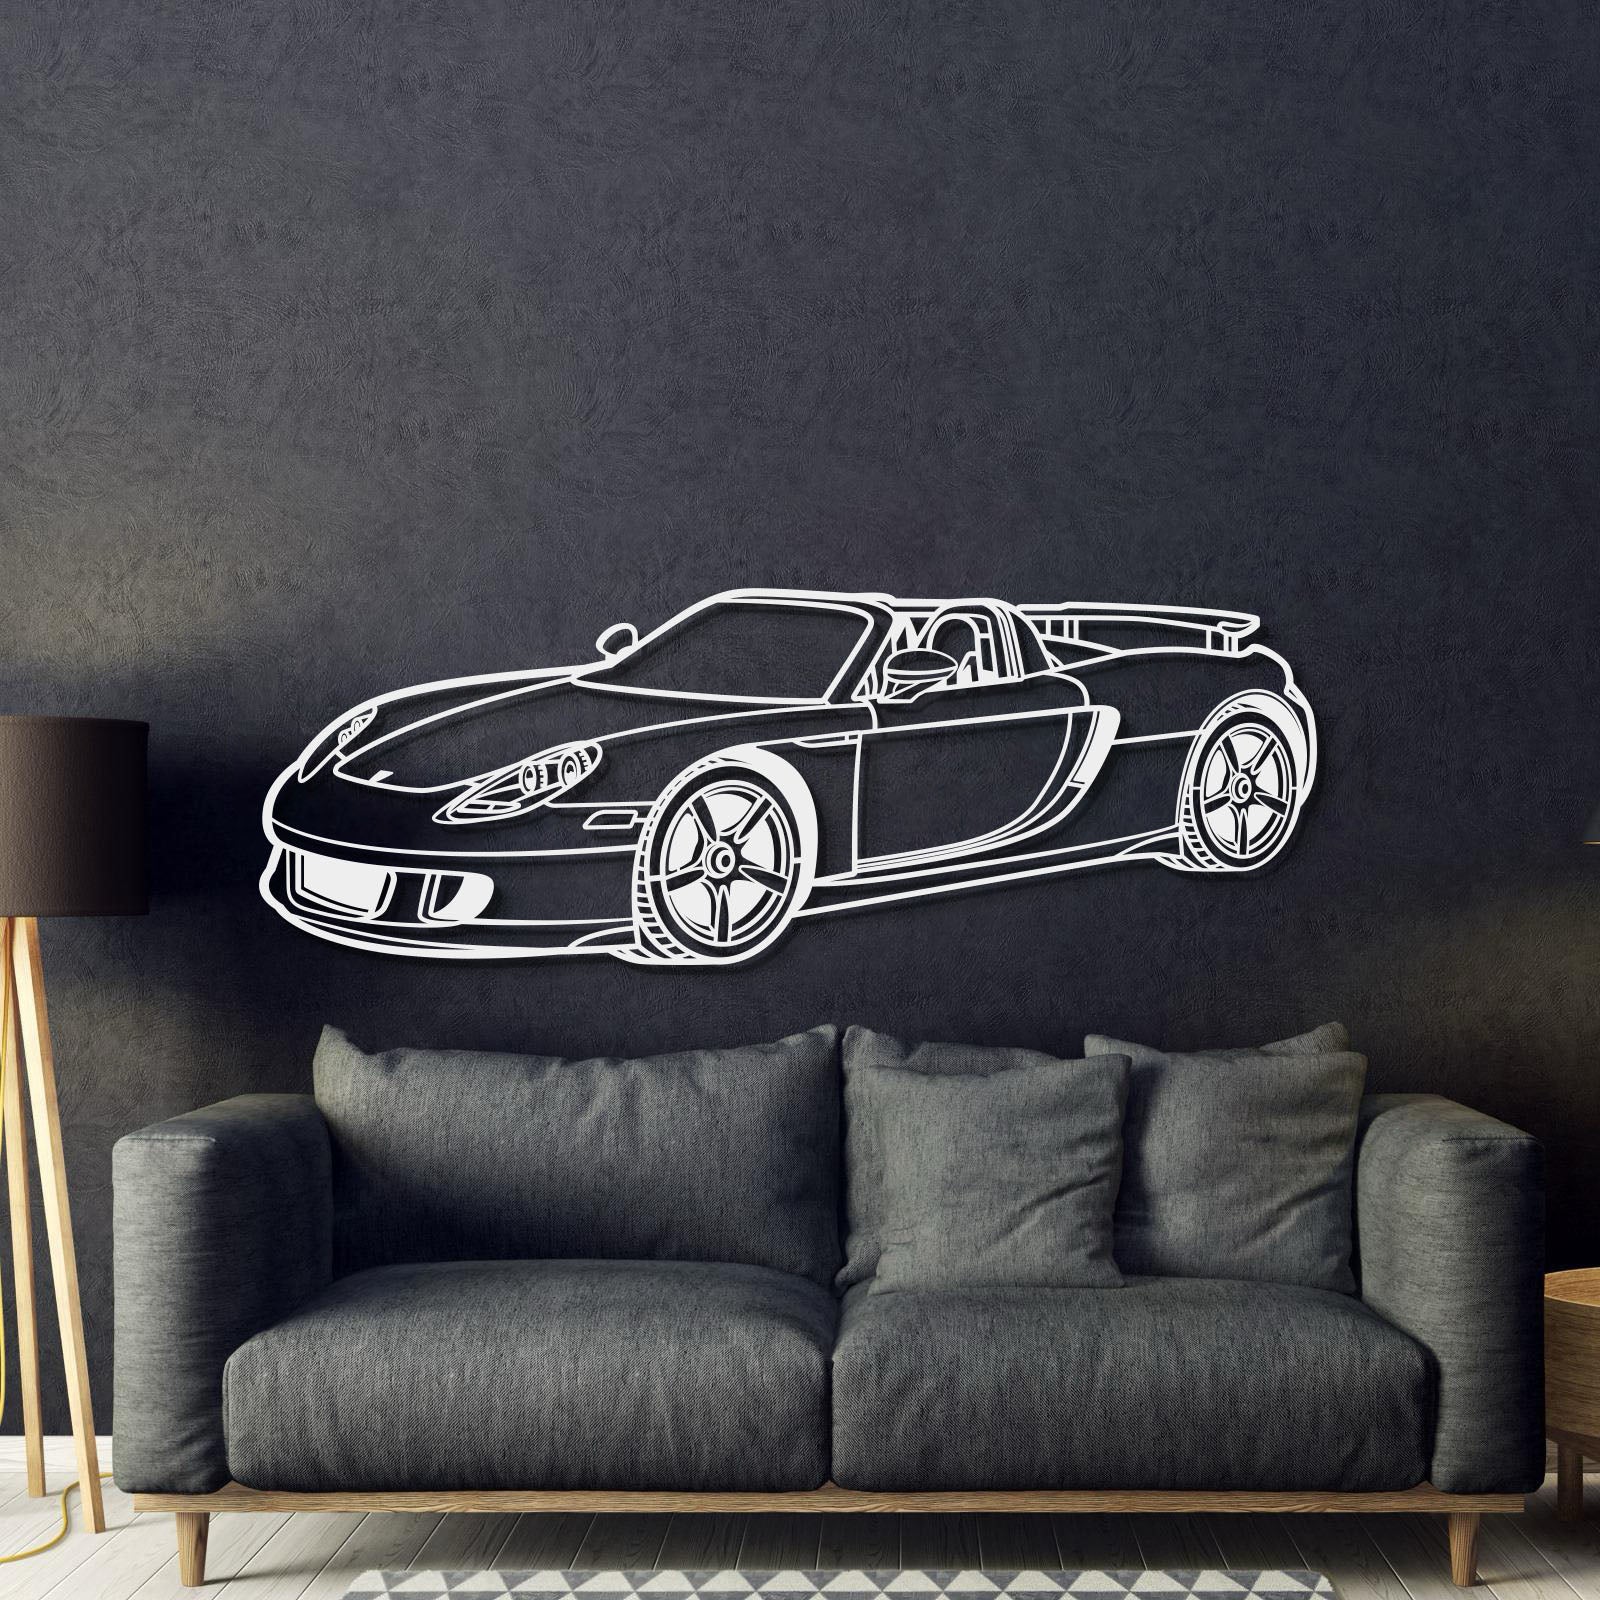 2004 Carrera GT Perspective Metal Car Wall Art - MT1188